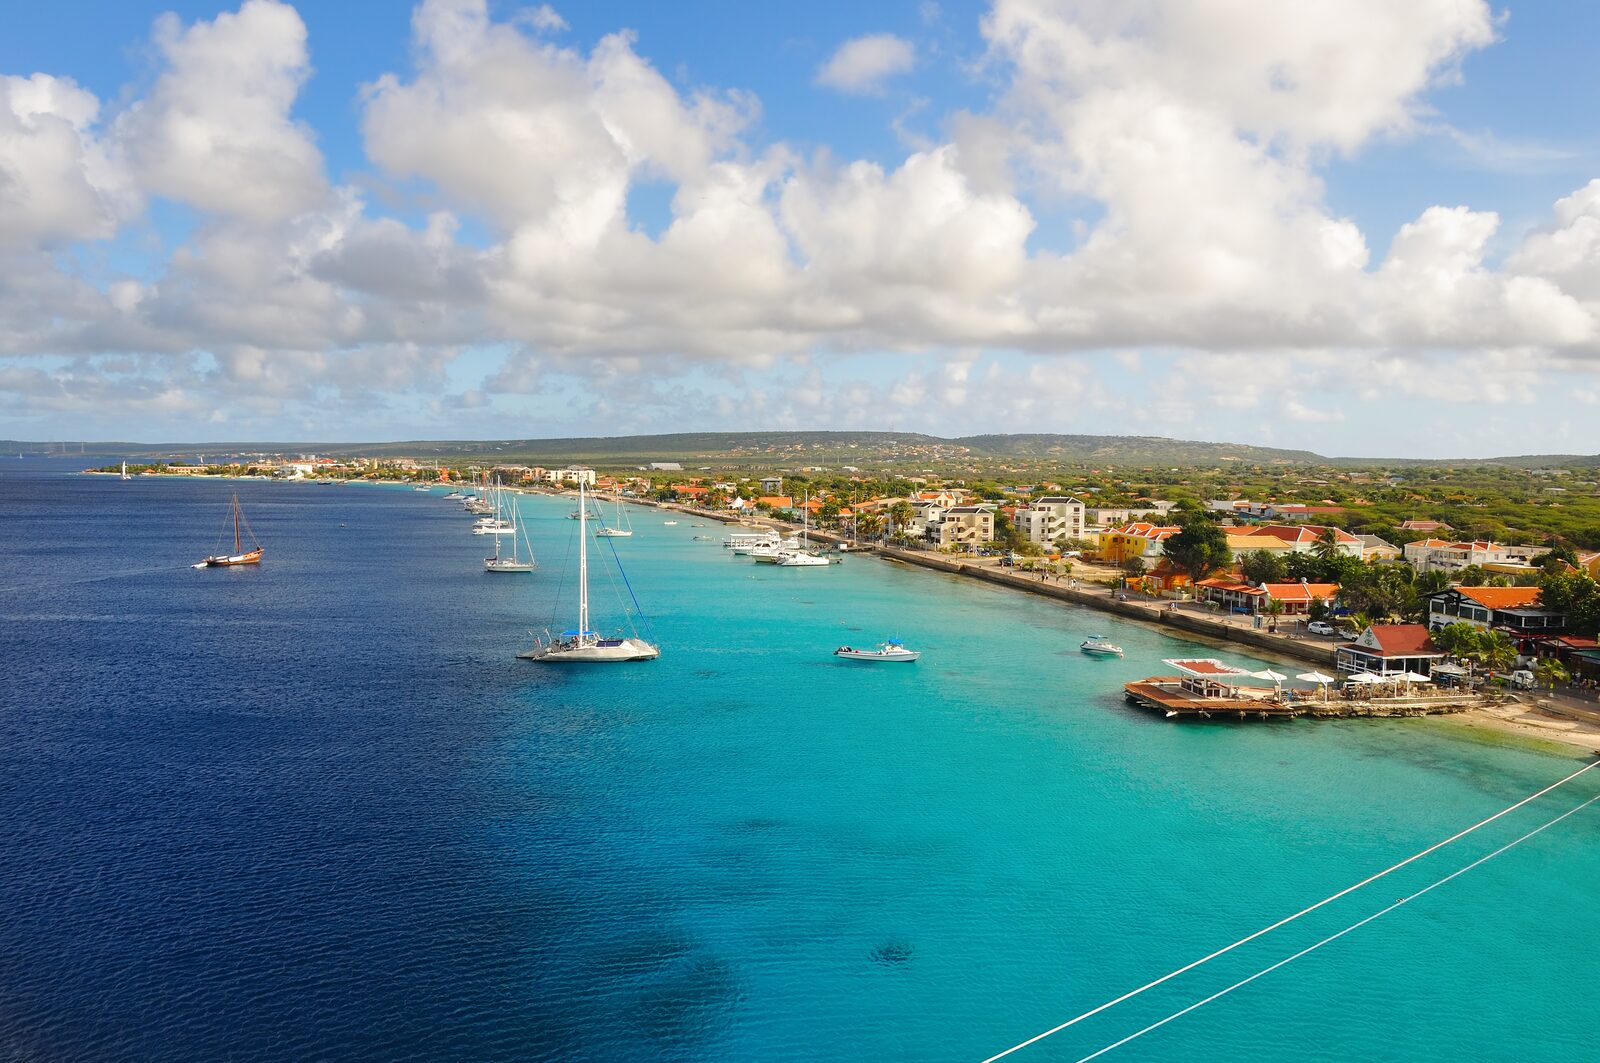 ¿Los mejores lugares para alojarse en Bonaire? Echa un vistazo a Resort Bonaire y otras instalaciones de esta hermosa isla.

